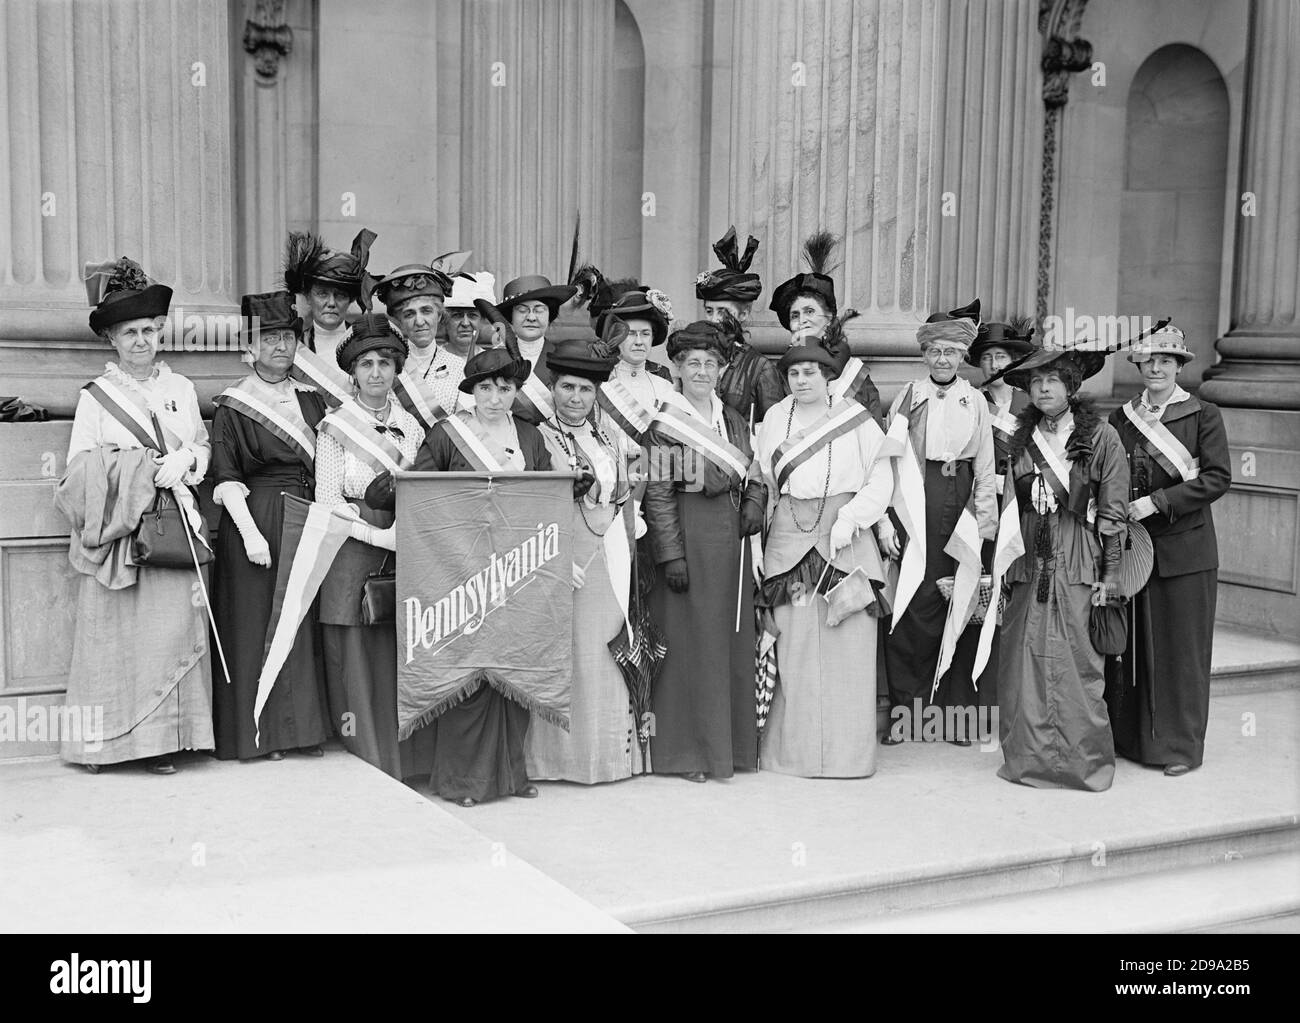 1917 , Washington , USA :  Photo shows women suffrage   PENNSYLVANIA pickets . Photo by Harris and Ewing -SUFFRAGETTE - SUFFRAGETTA - sufraggetta - Sufragist - POLITICO - POLITICIAN - POLITICA - POLITIC - FEMMINISMO - FEMMINISTA  - FEMMINISTE - SUFFRAGETTE - USA - ritratto - portrait -  FLAG - BANDIERA -  STATI UNITI d' AMERICA - FEMMINISM - FEMMINIST - SUFFRAGIO UNIVERSALE - VOTO POLITICO ALLE DONNE - hat - cappello  - FASHION - MODA  - - FOTO DI GRUPPO -  PER LA DIFESA DEI DIRITTI DELLE DONNE - picchetto - picchettaggio  - ANNI DIECI - '10 - 10's  ----  Archivio GBB Stock Photo